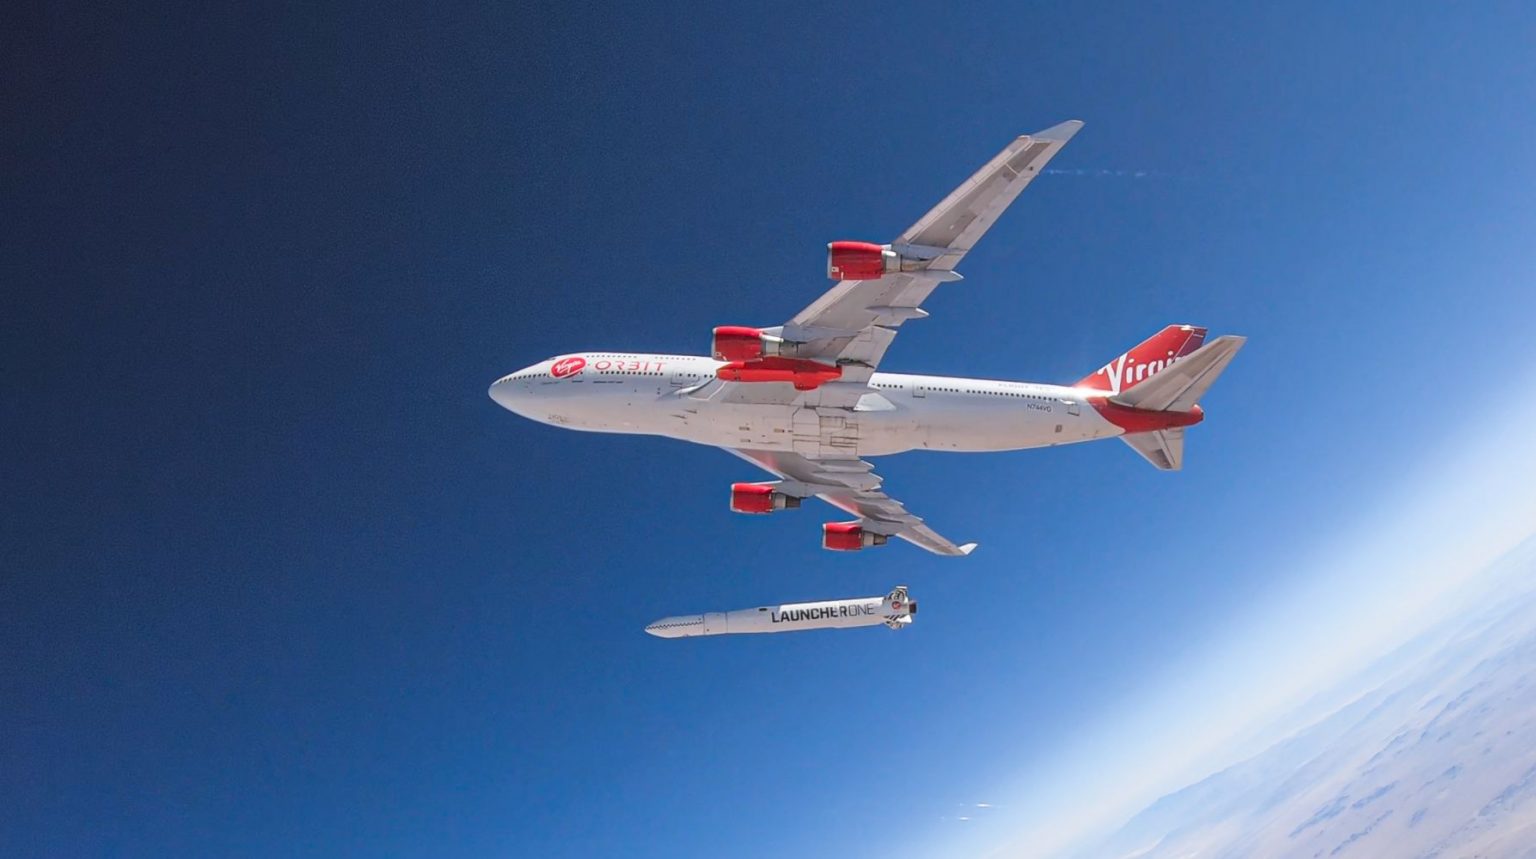 Lietadlo Boeing 747 Cosmic Girl spoločnosti Virgin Orbit vypúšťa raketu Launcher One. Foto: SITA/Virgin Orbit